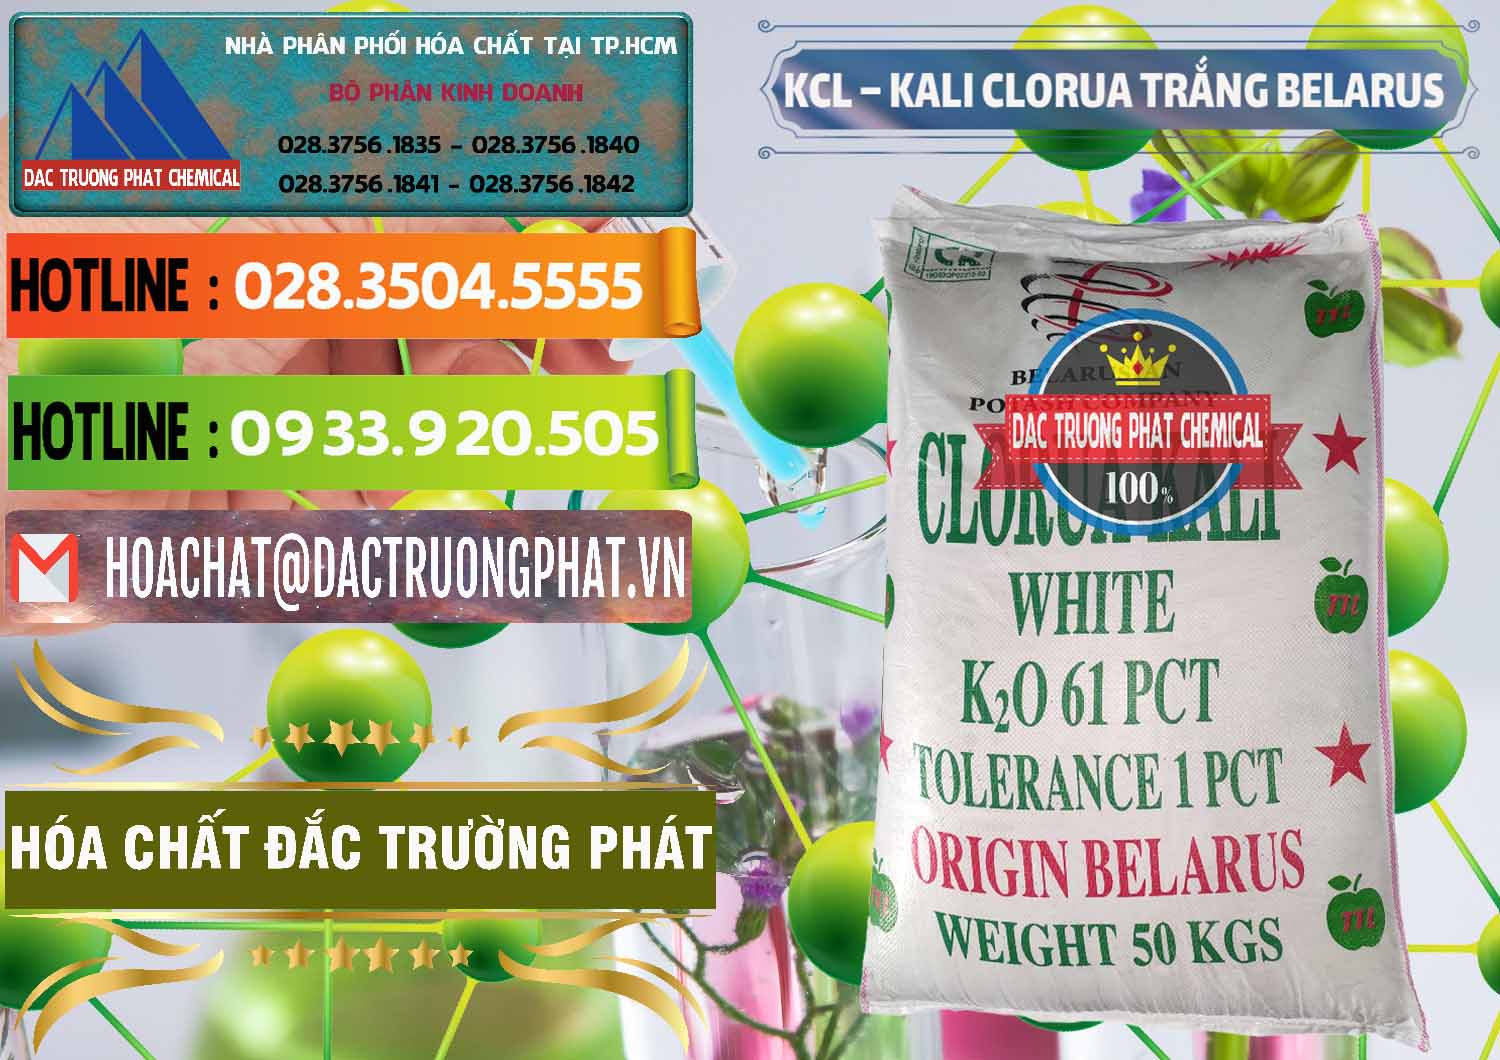 Cung ứng và bán KCL – Kali Clorua Trắng Belarus - 0085 - Công ty cung cấp ( bán ) hóa chất tại TP.HCM - cungcaphoachat.com.vn